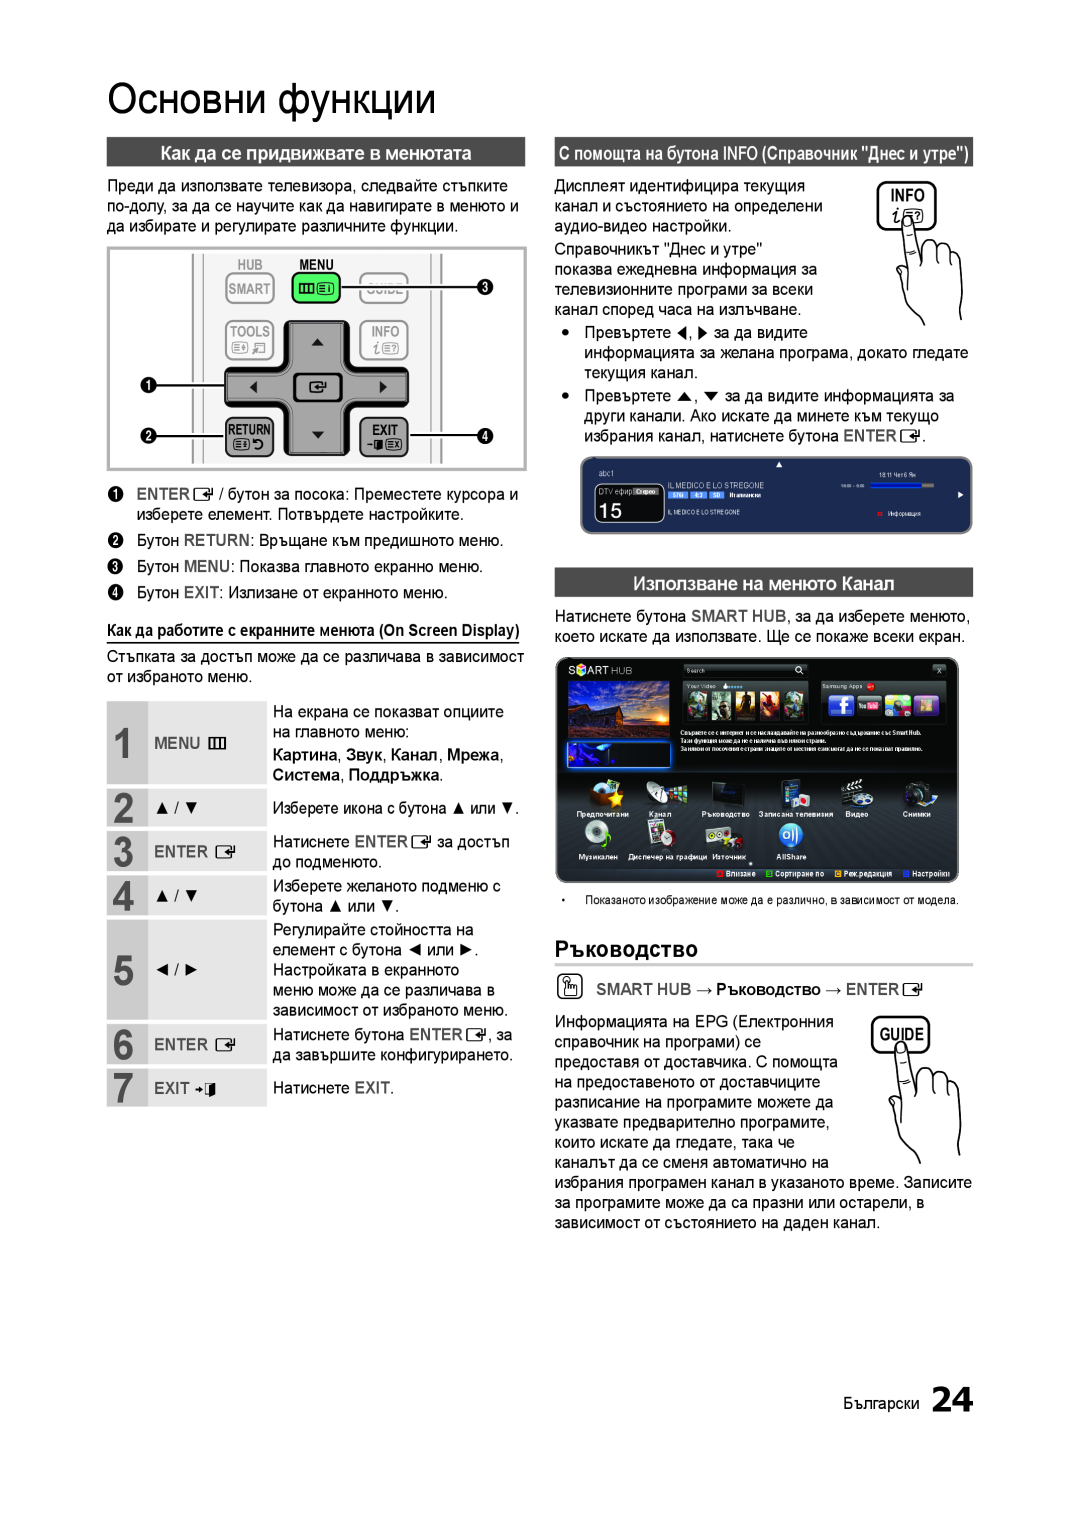 Samsung LT27A750EX/EN Основни функции, Ръководство, Как да се придвижвате в менютата, Използване на менюто Канал, MENU m 